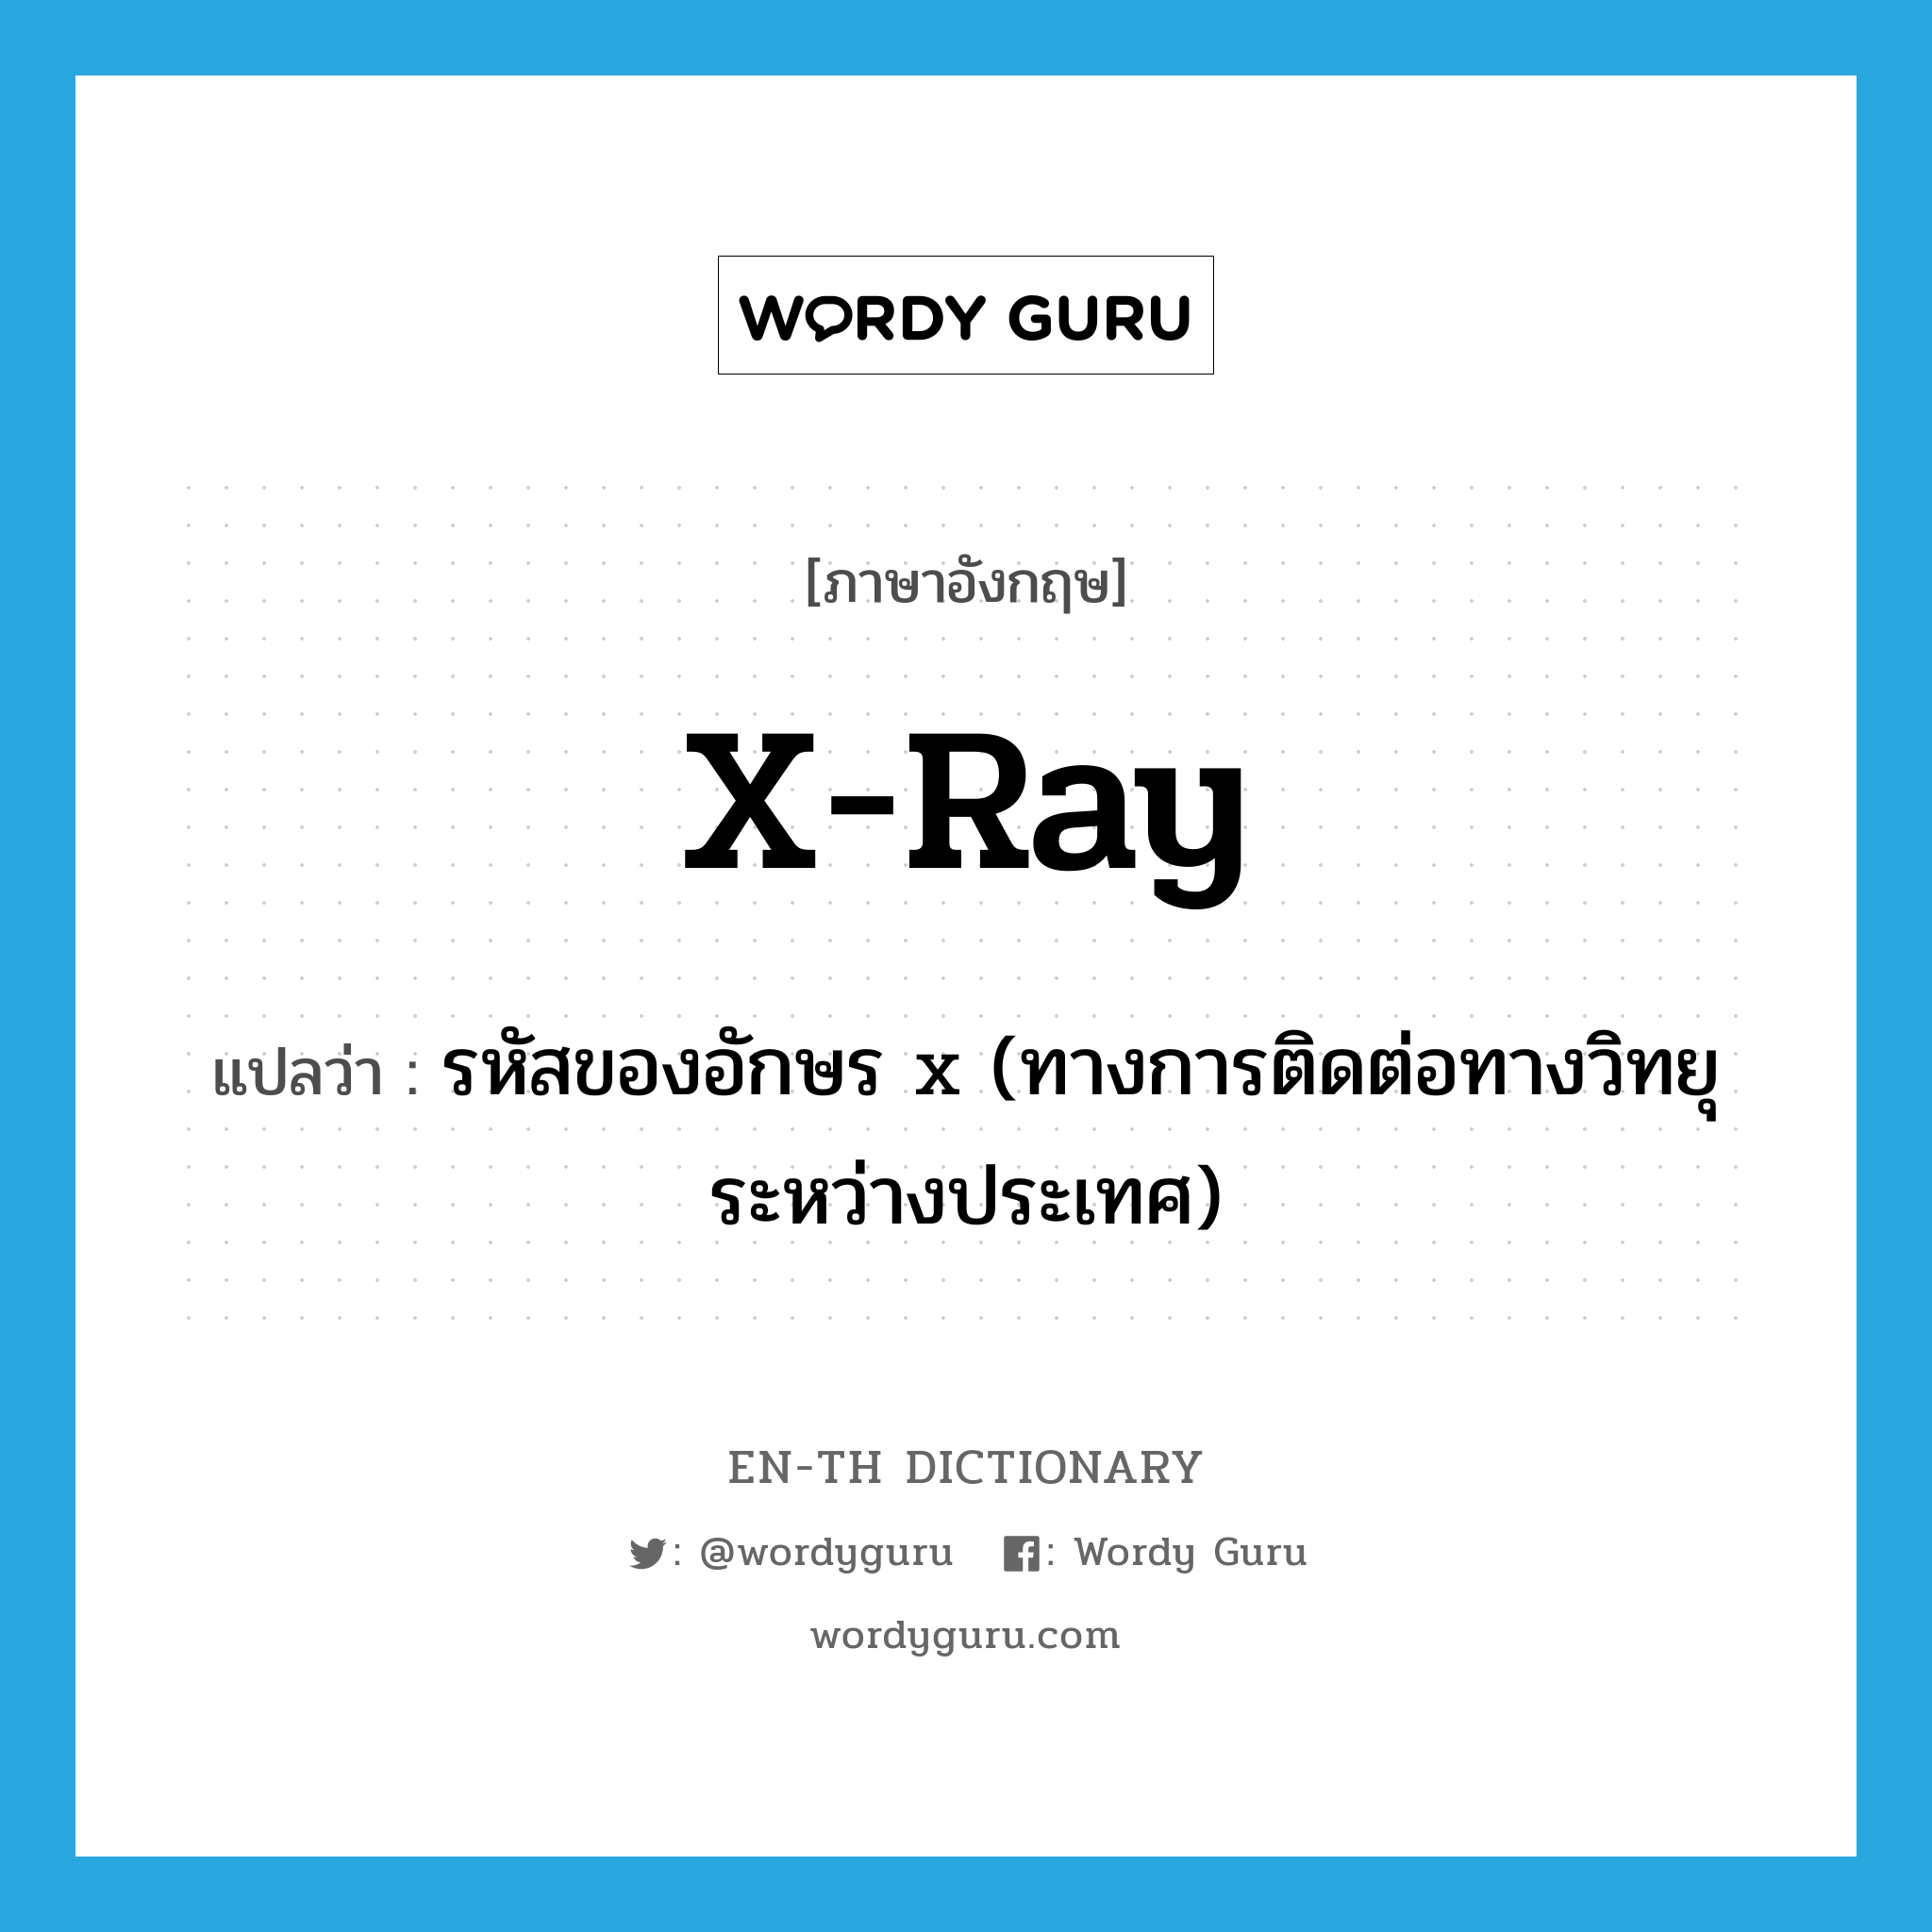 รหัสของอักษร x (ทางการติดต่อทางวิทยุระหว่างประเทศ) ภาษาอังกฤษ?, คำศัพท์ภาษาอังกฤษ รหัสของอักษร x (ทางการติดต่อทางวิทยุระหว่างประเทศ) แปลว่า x-ray ประเภท N หมวด N